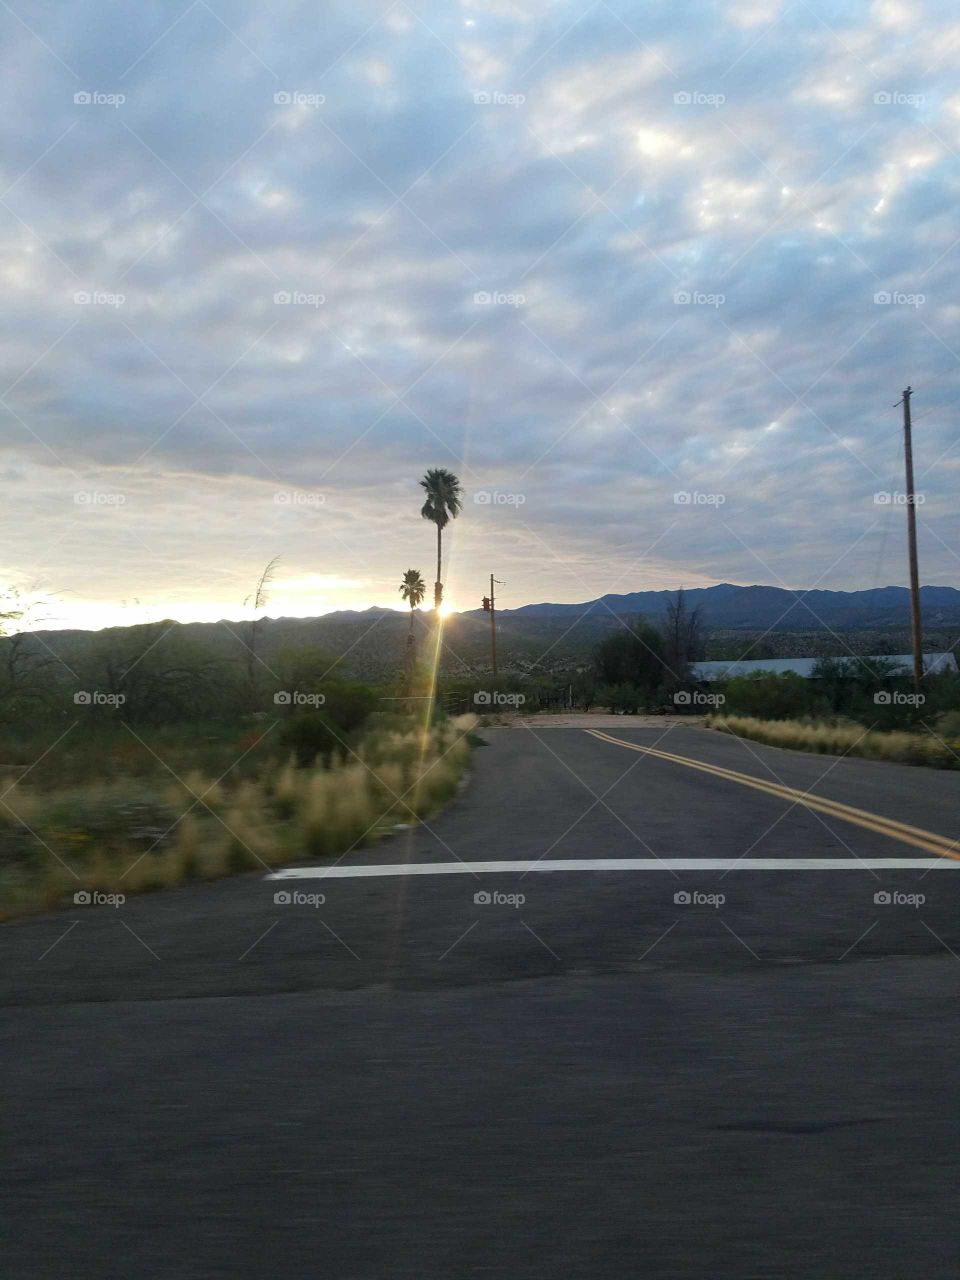 sunrise on road trip